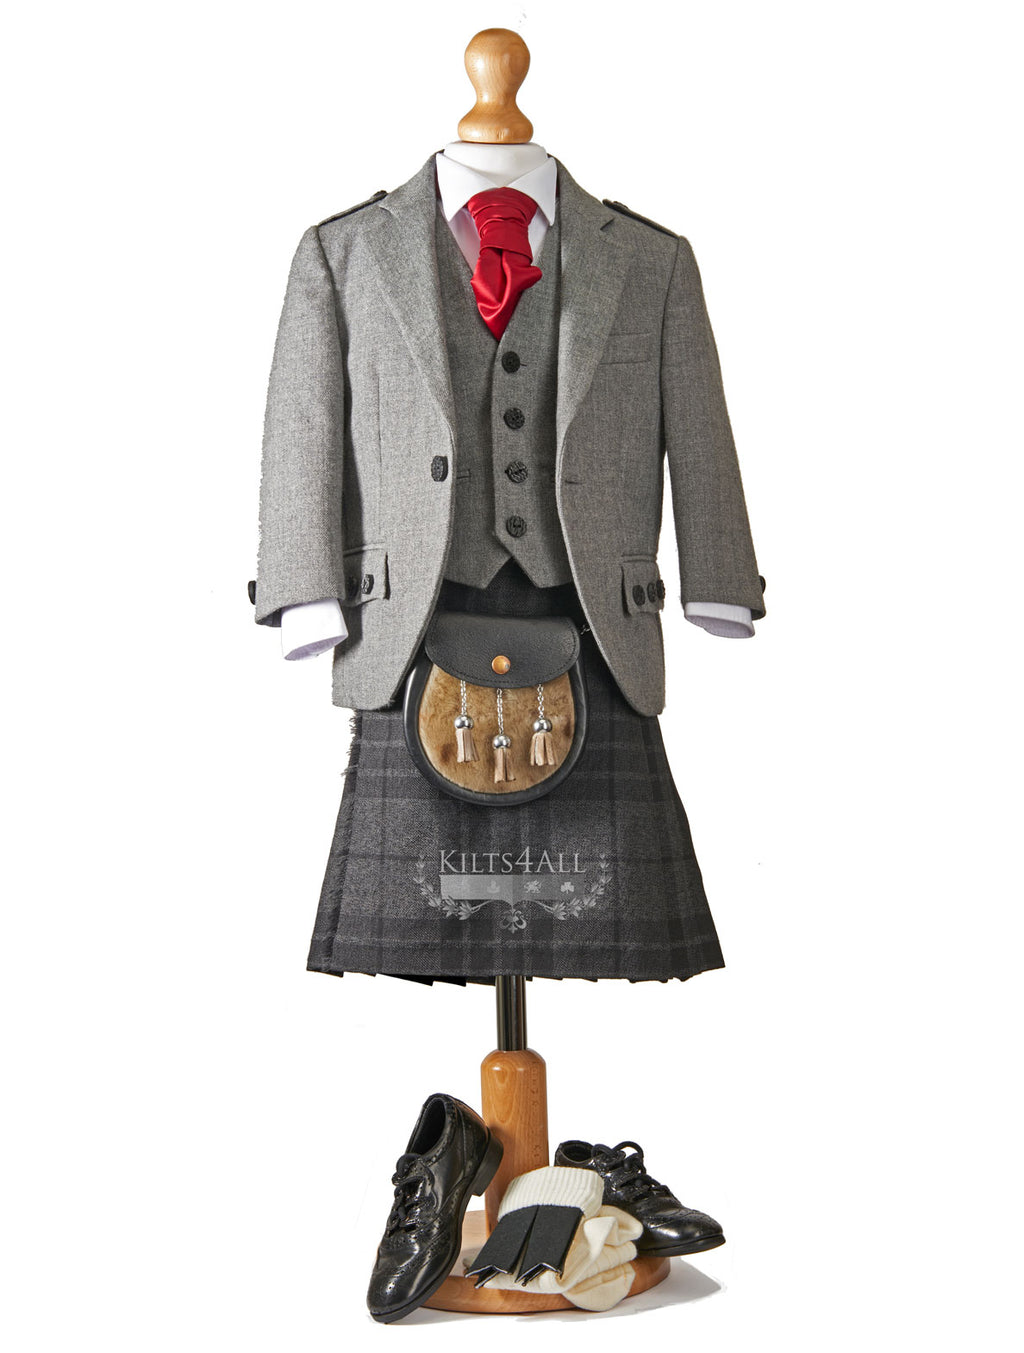 Boys Tartan Kilt Outfit to Hire - Light Grey Argyll Jacket & Waistcoat